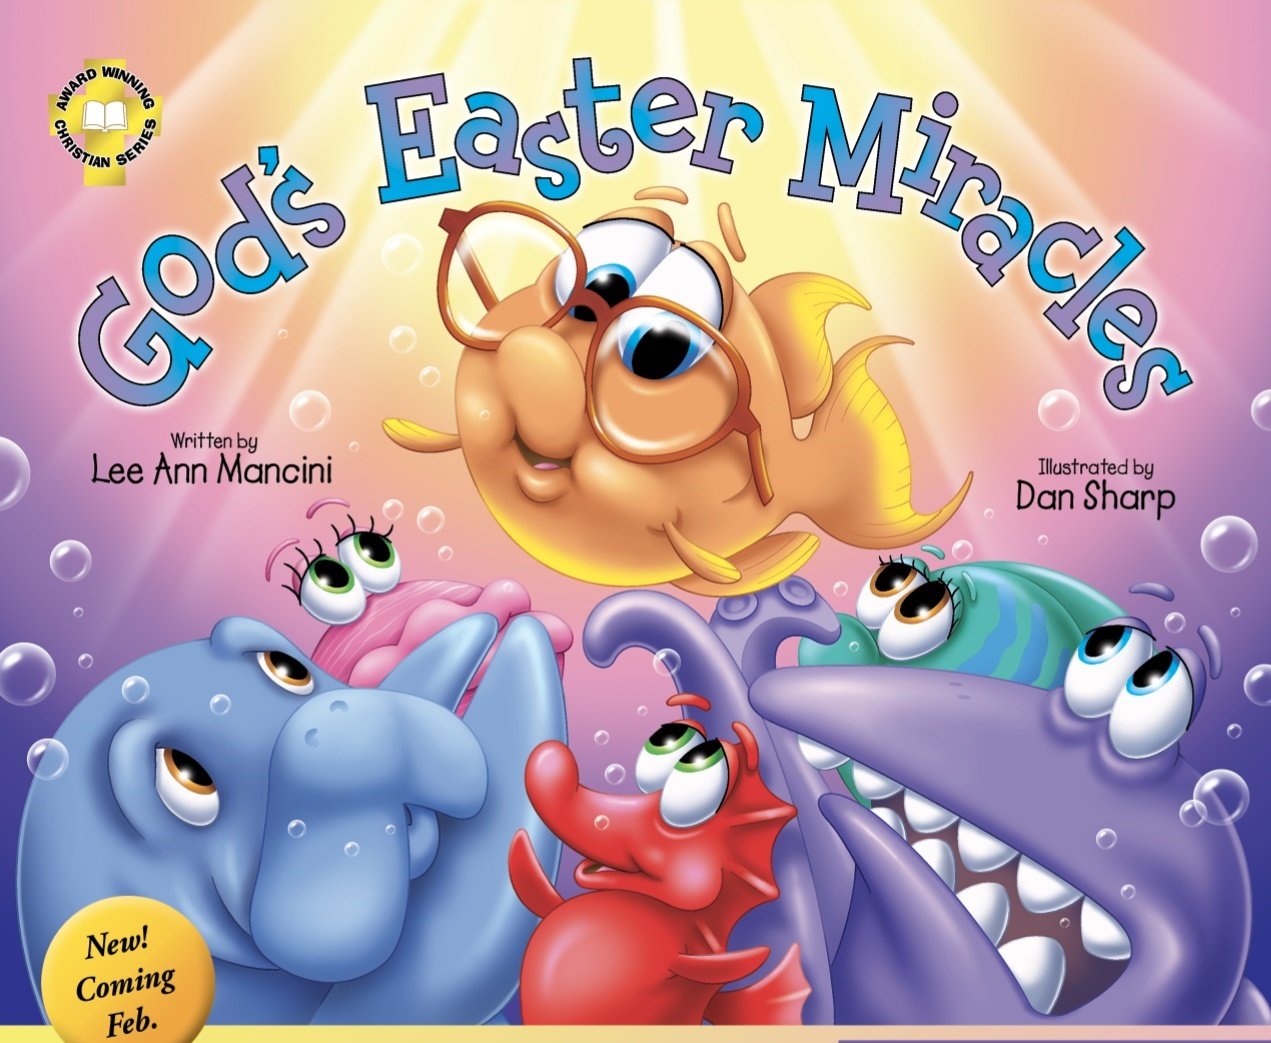 Lee Ann Macini's latest children's Christian book, God's Easter Miracles.